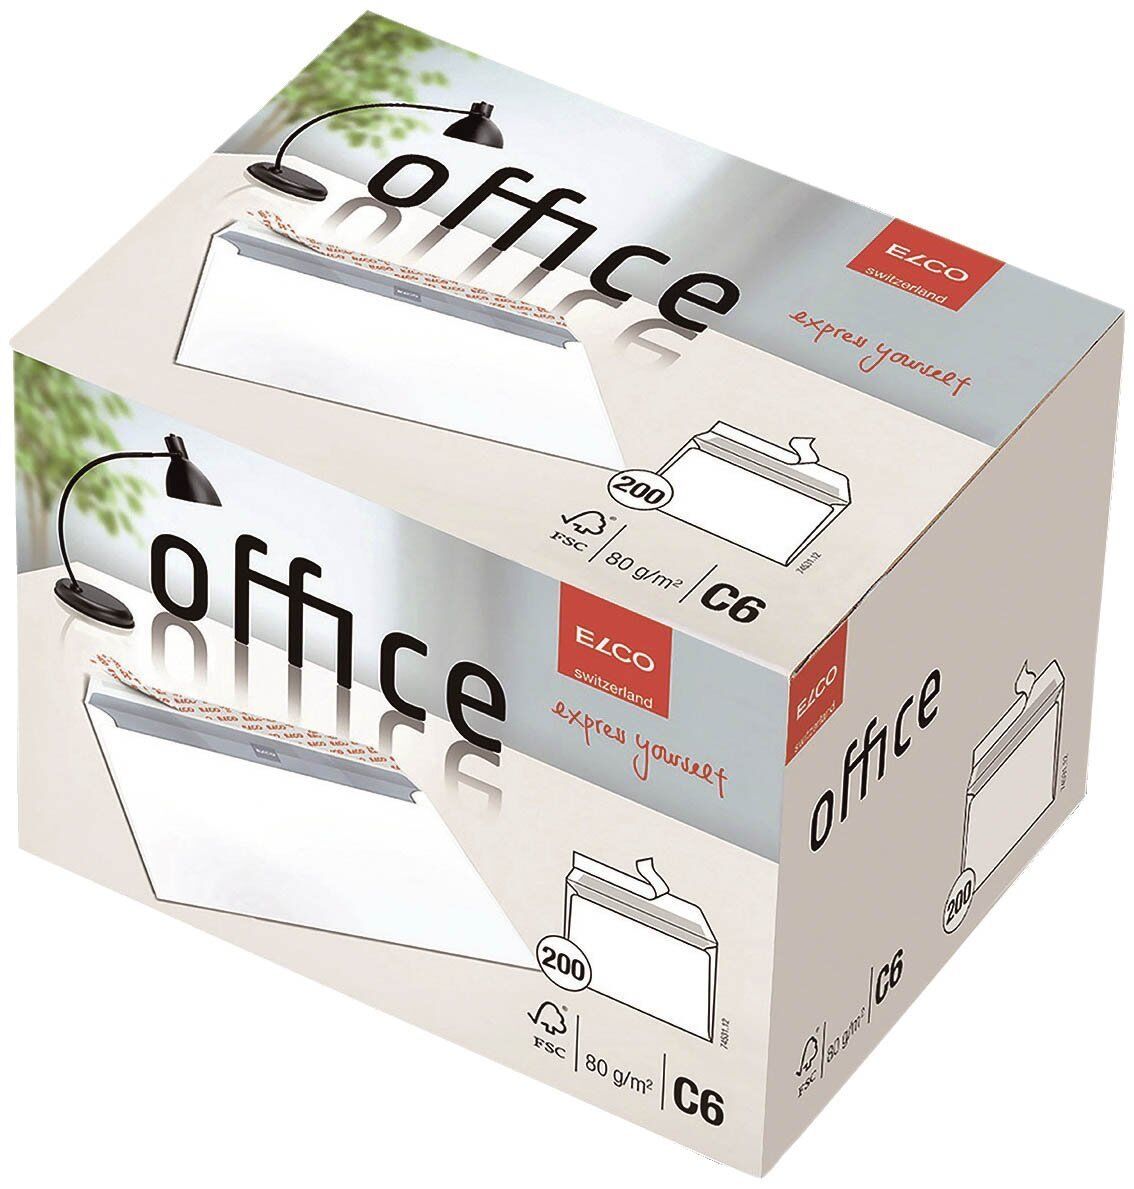 Briefumschlag Office in Shop Box - C6, hochweiß, haftklebend, ohne Fenster, 80 g/qm, 200 Stück